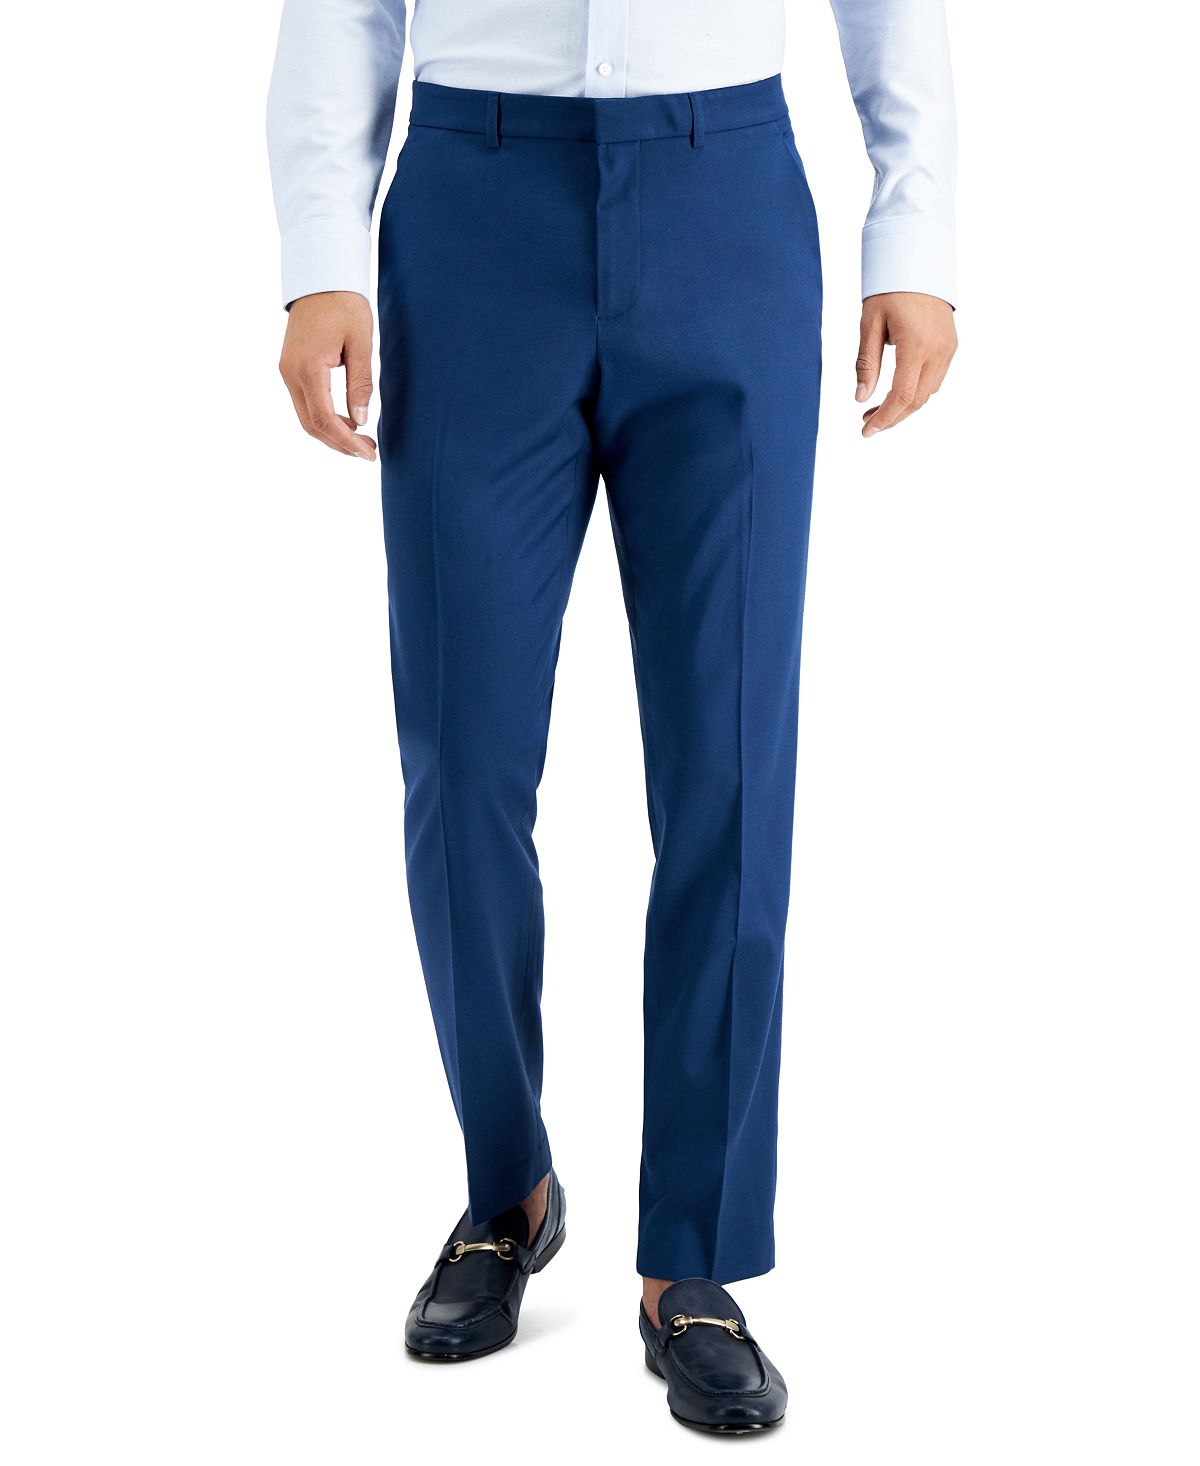 оставайтесь на работе от touson Мужские классические брюки slim fit non-iron performance stretch из меланжевой ткани Perry Ellis Portfolio, мульти